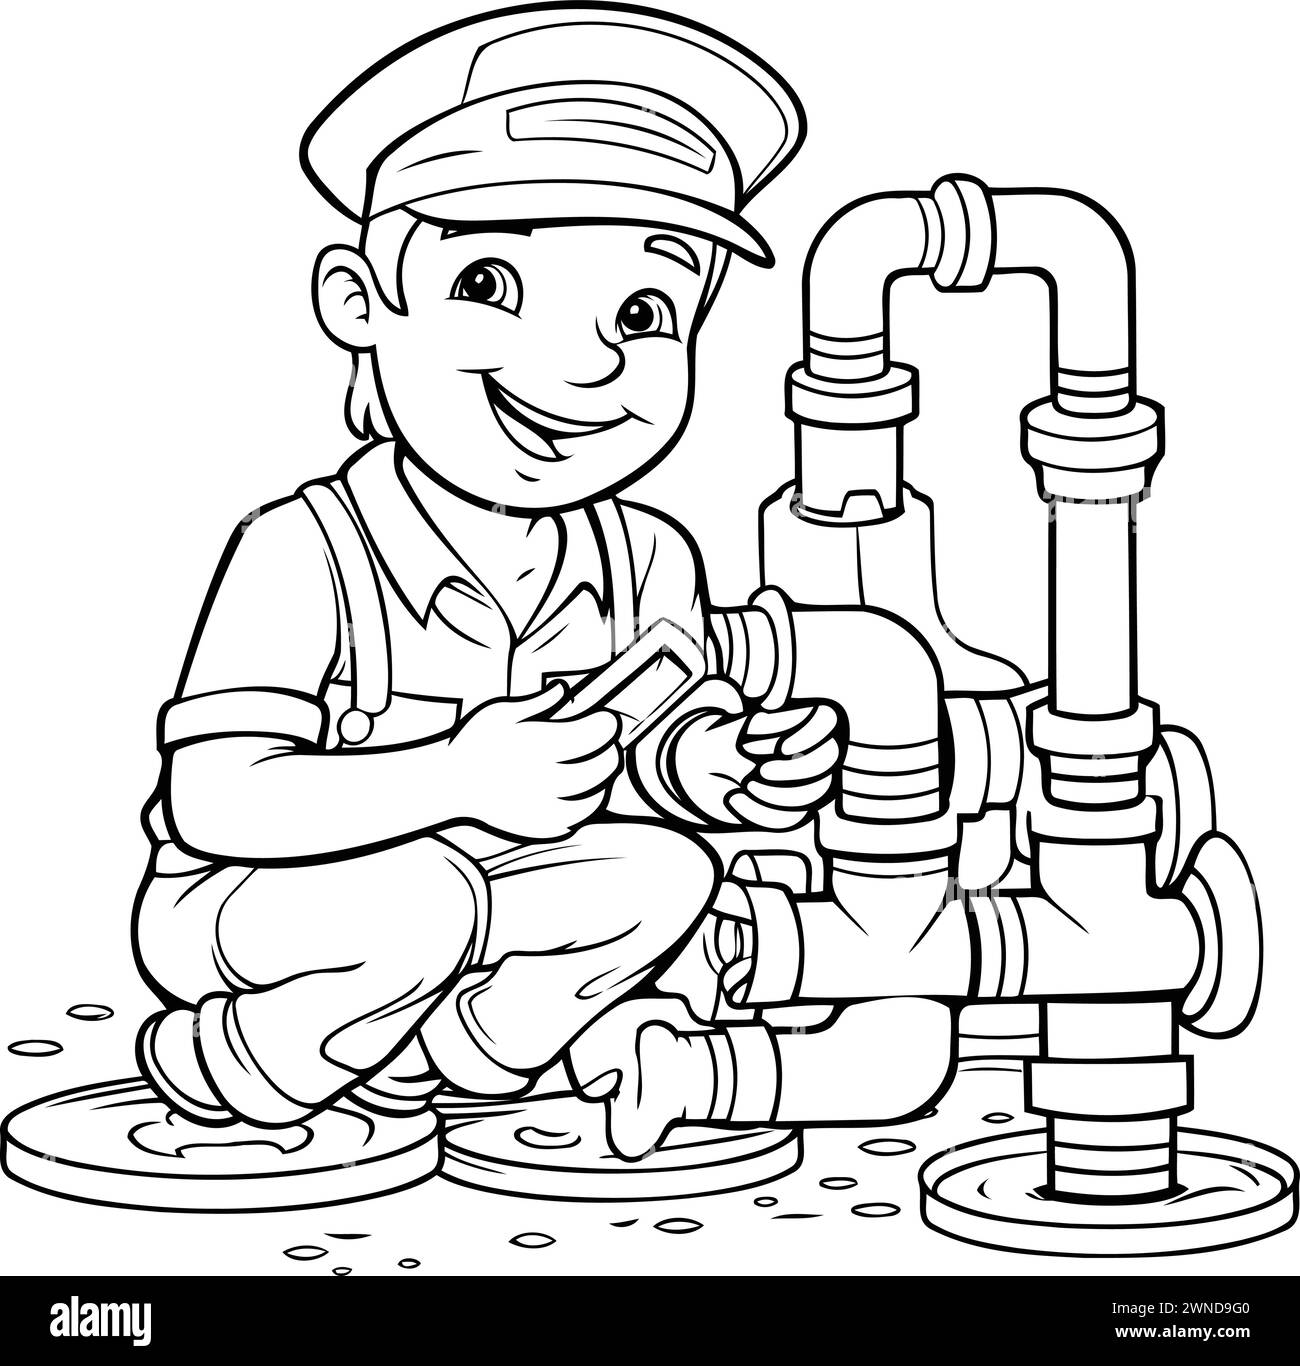 Immagine di un idraulico che ripara un tubo al lavoro. Pagina da colorare Illustrazione Vettoriale